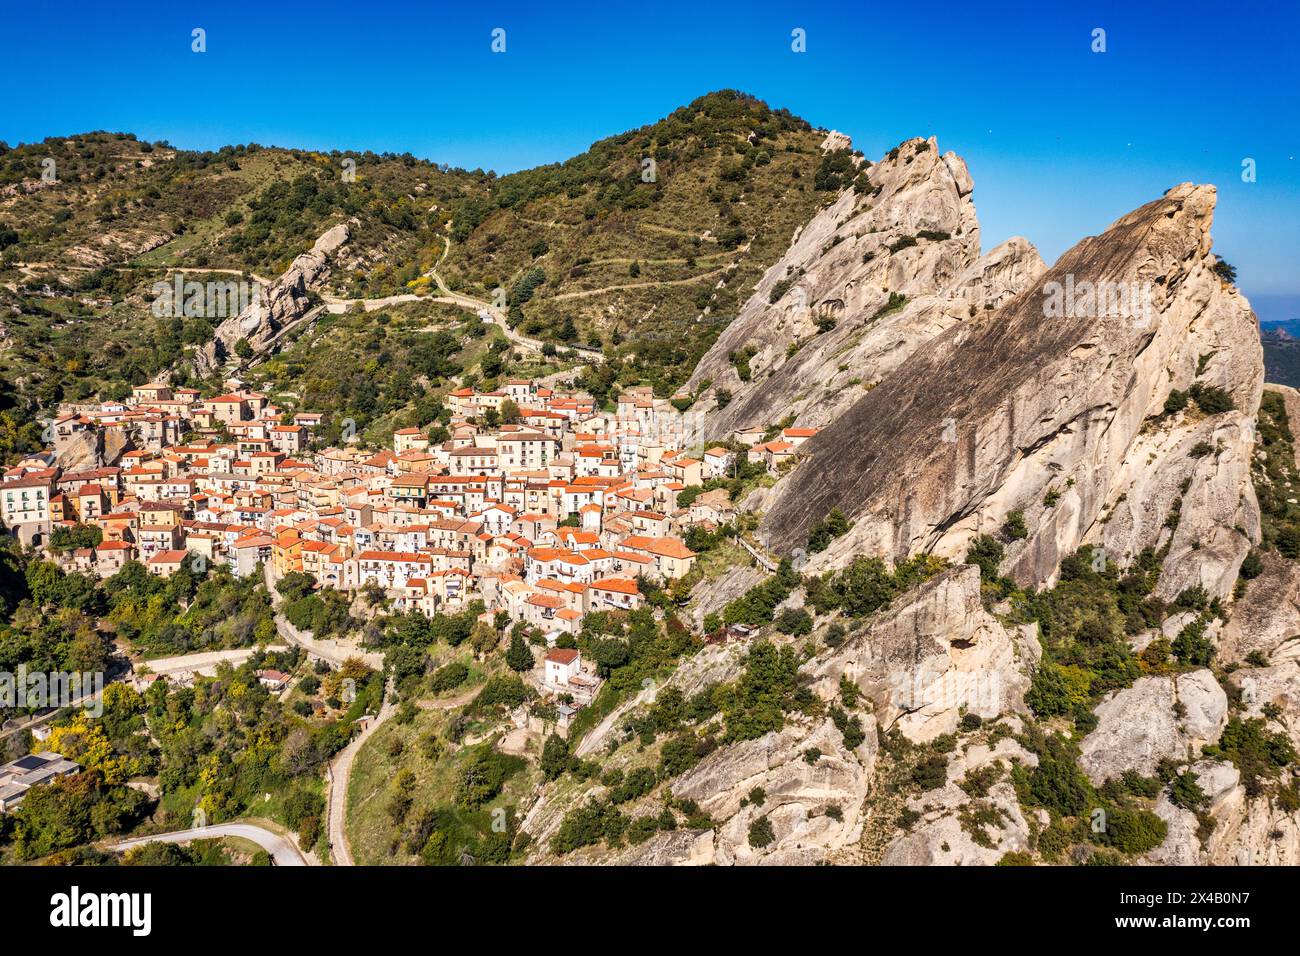 Das malerische Dorf Castelmezzano, Provinz Potenza, Basilicata, Italien. Stadtansicht auf die mittelalterliche Stadt Castelmazzano, Italien. Gegossen Stockfoto